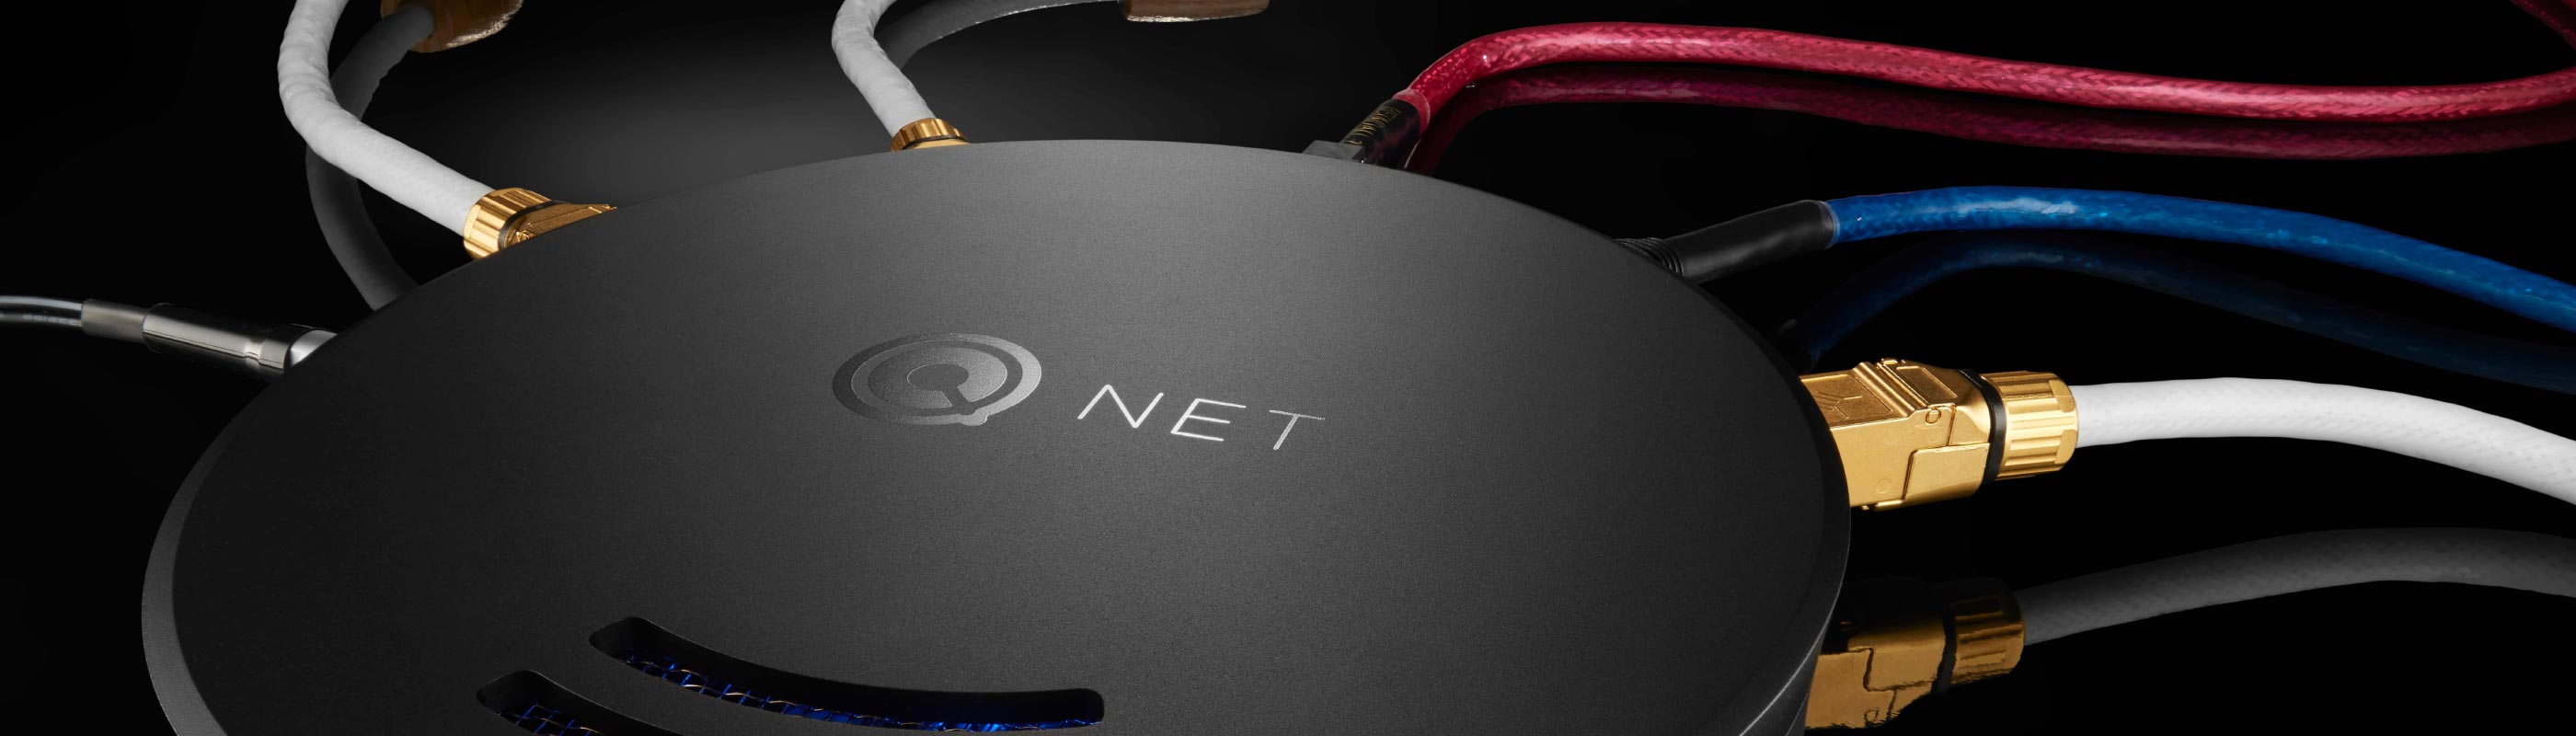 Nordost Switch réseau Qnet